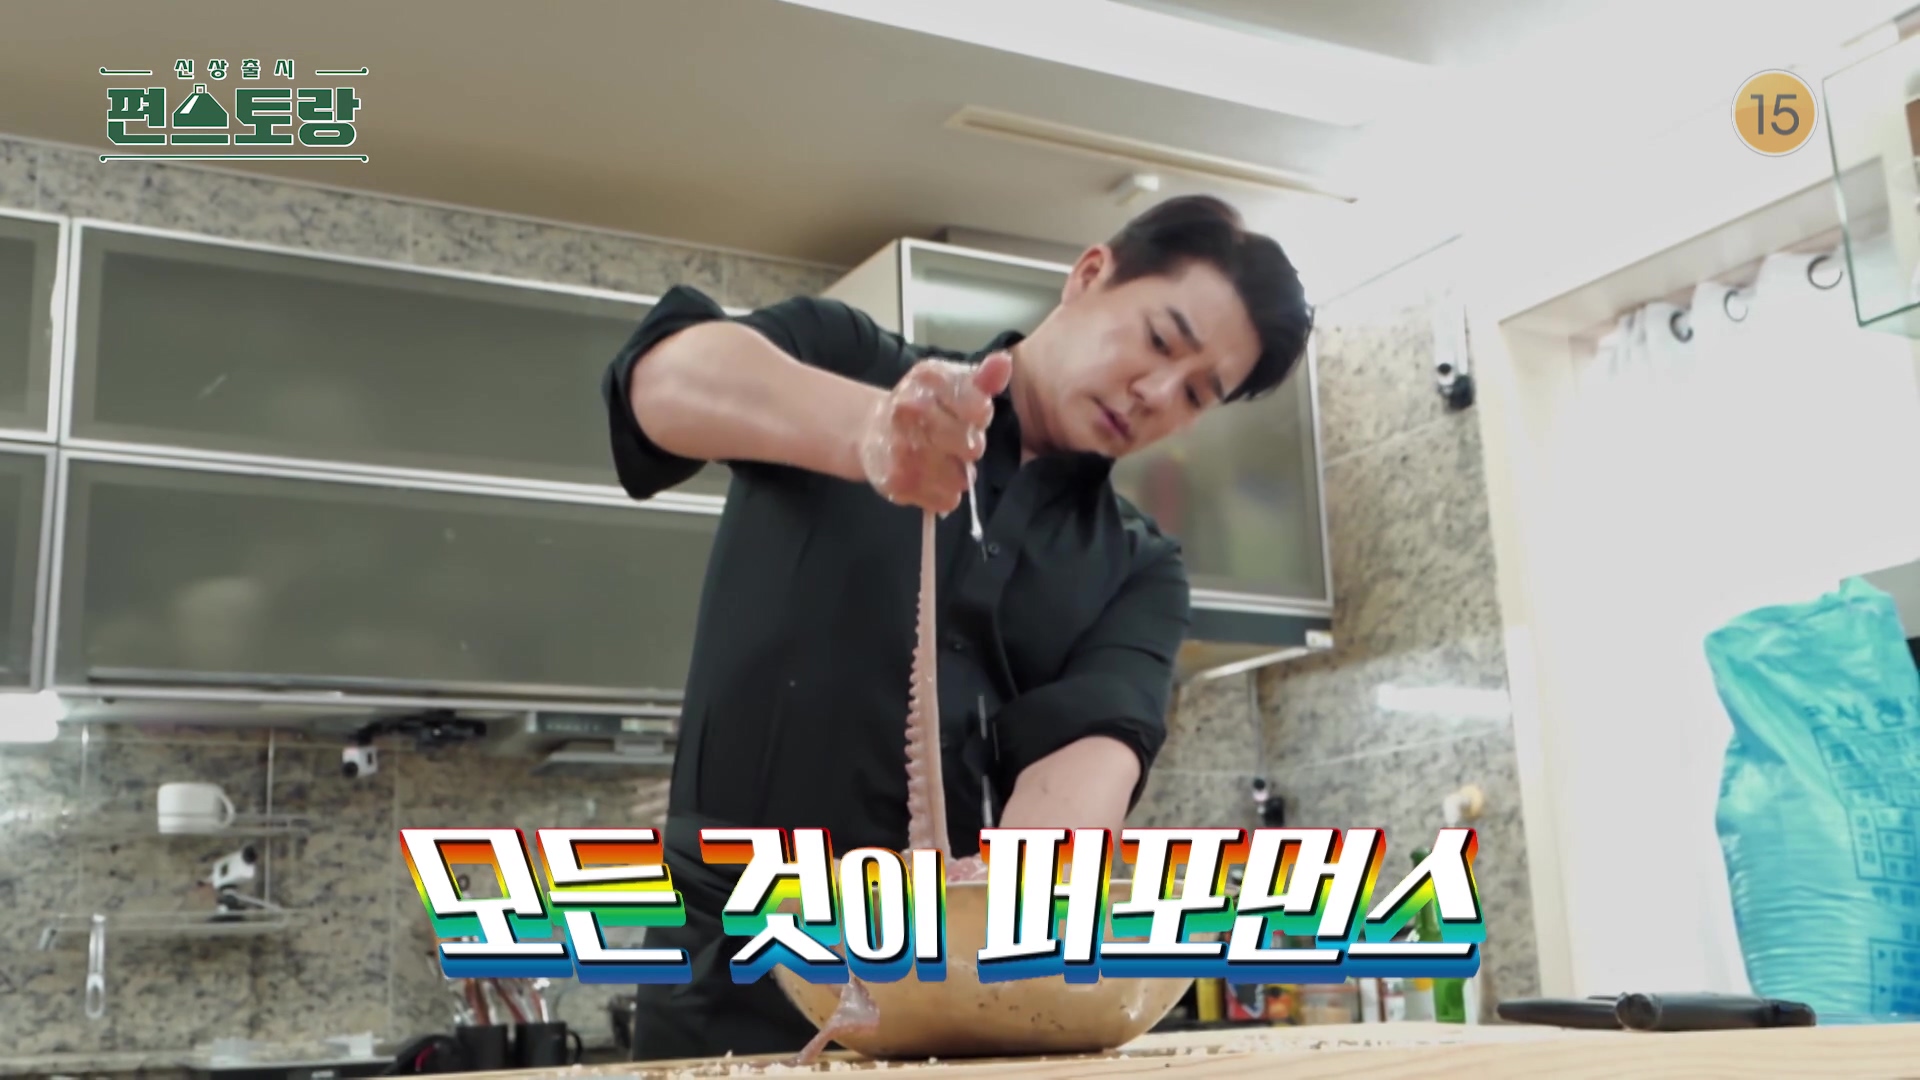 KBS 편스토랑 섹시빌런 킹츠비 킹태곤 이태곤 피넛버터 새우볶음밥 레시피 만드는 방법 소개